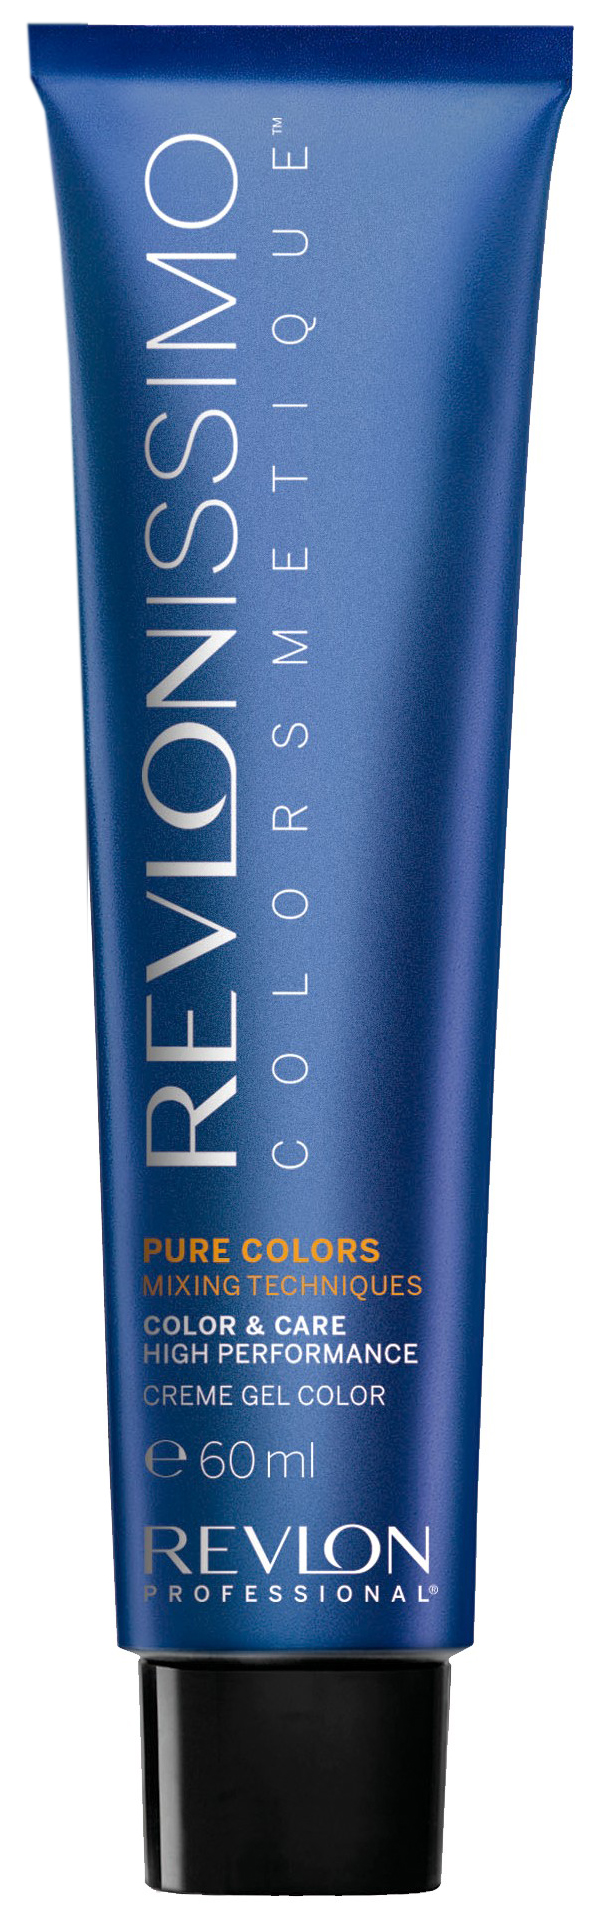 Купить Краска для волос REVLON чистый интенсив 900 фуксия, 50 мл, Revlon Professional